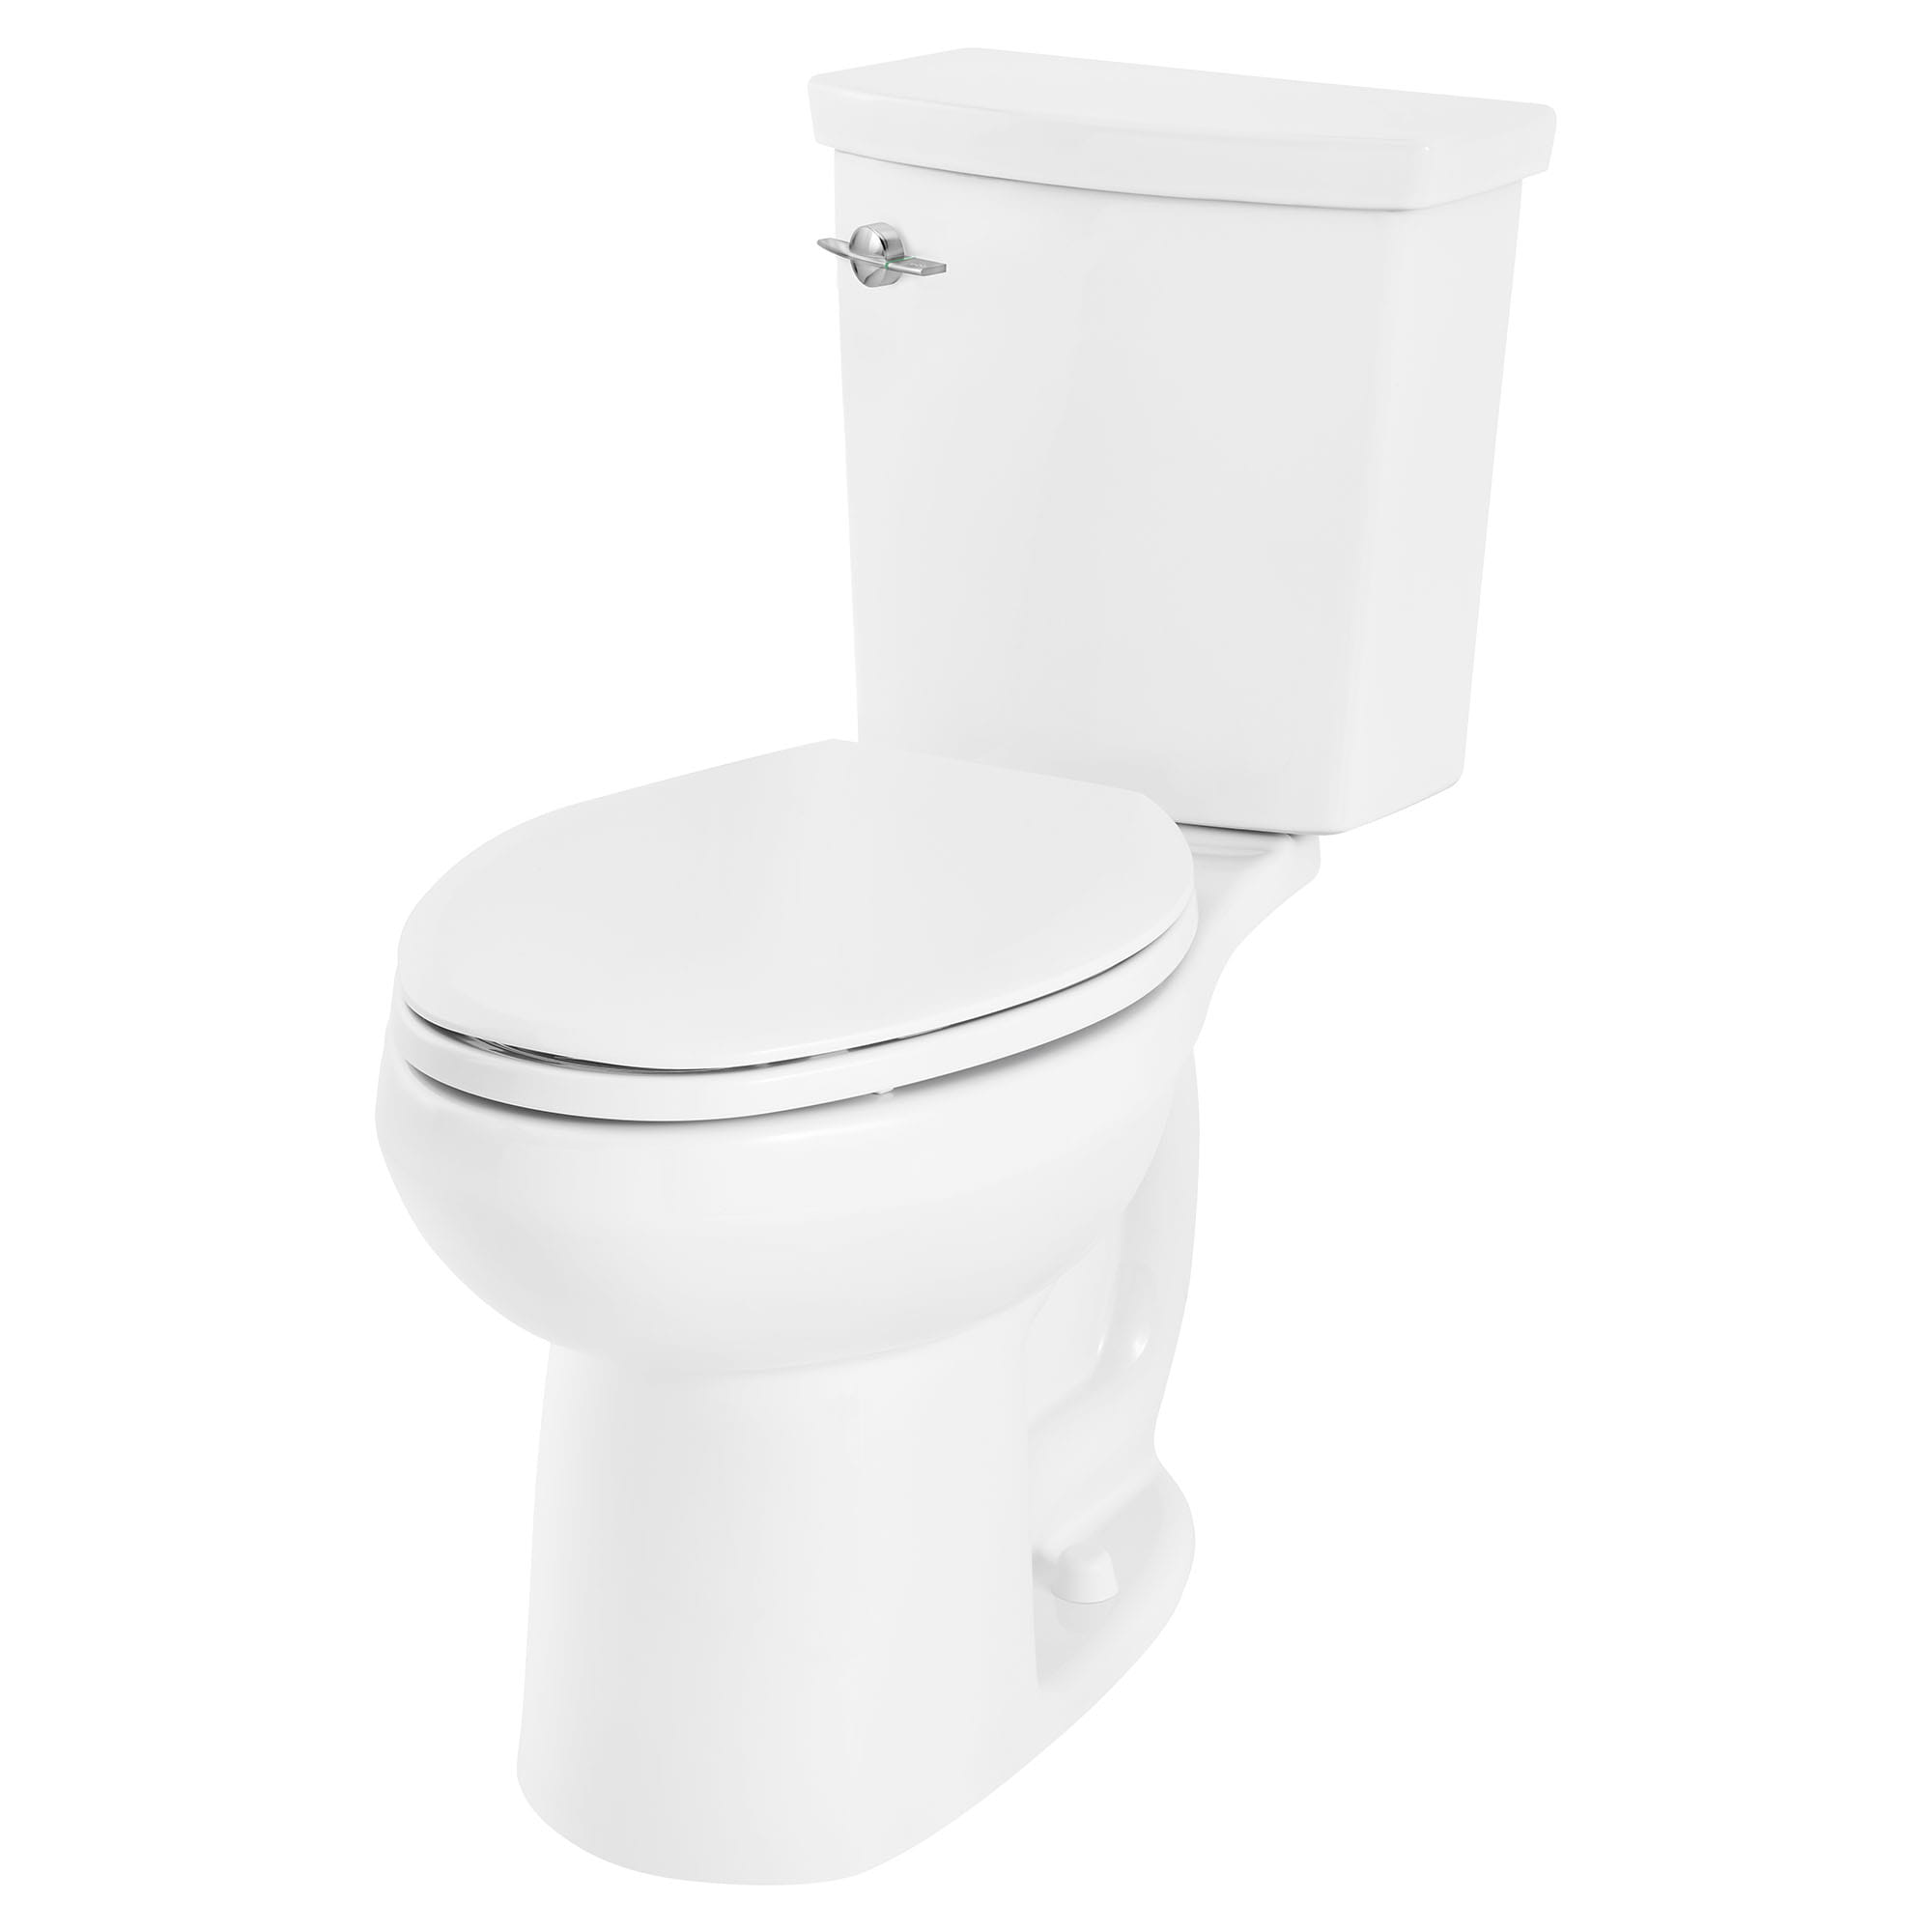 Toilette H2Option ADA, 2 pièces, chasse double 1,28 gpc/4,8 lpc et 0,92 gpc/3,5 lpc, à cuvette allongée à hauteur de chaise, sans siège